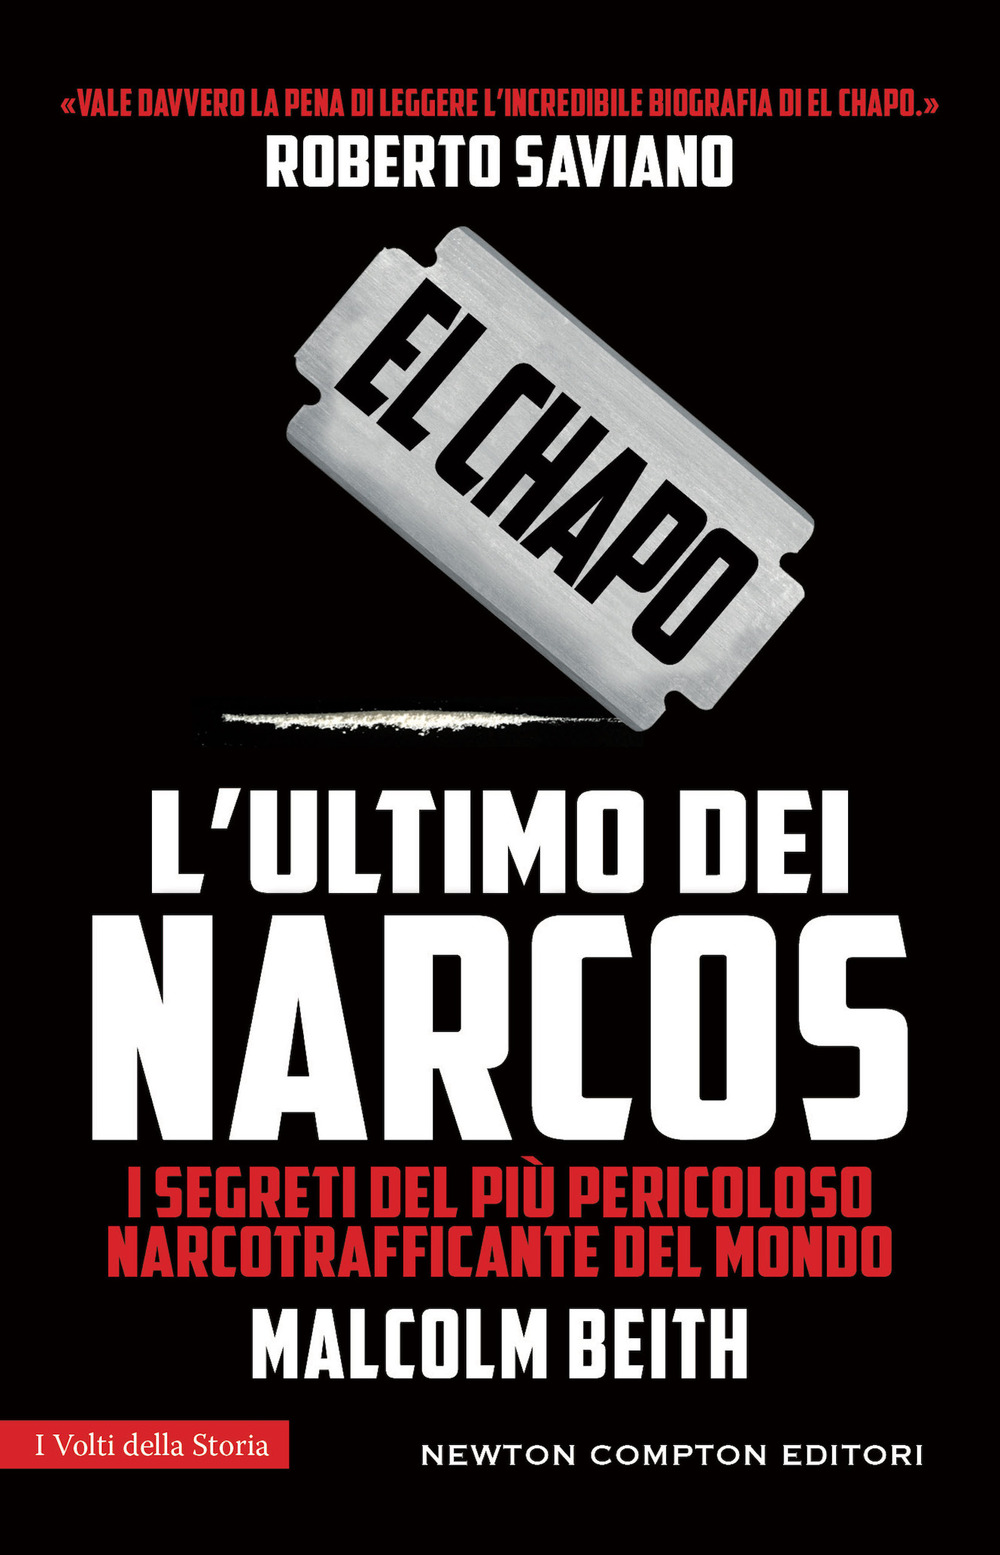 El Chapo. L'ultimo dei narcos